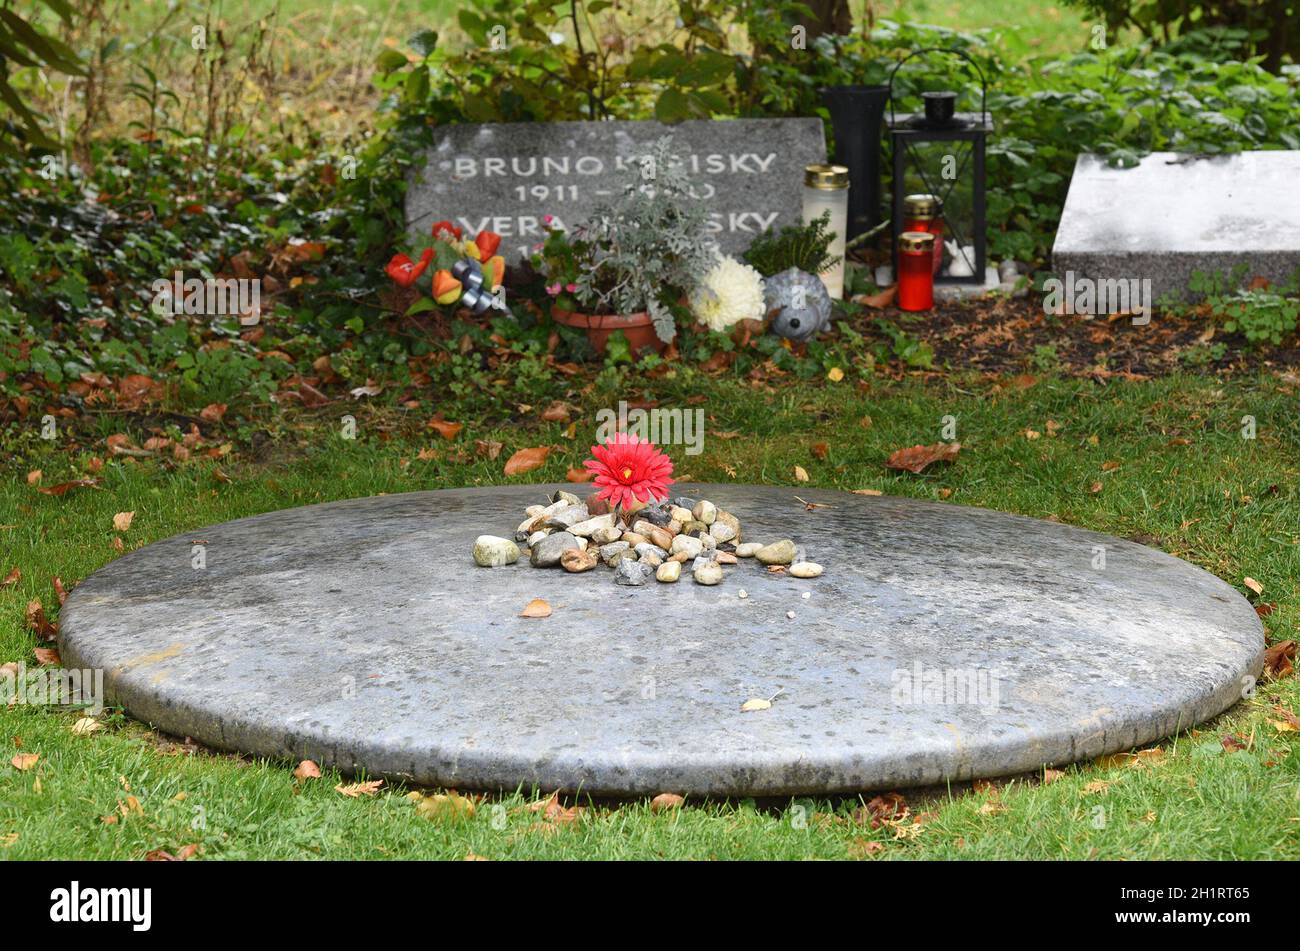 Zentralfriedhof in Wien - Ehrengrab Bruno Kreisky Stock Photo